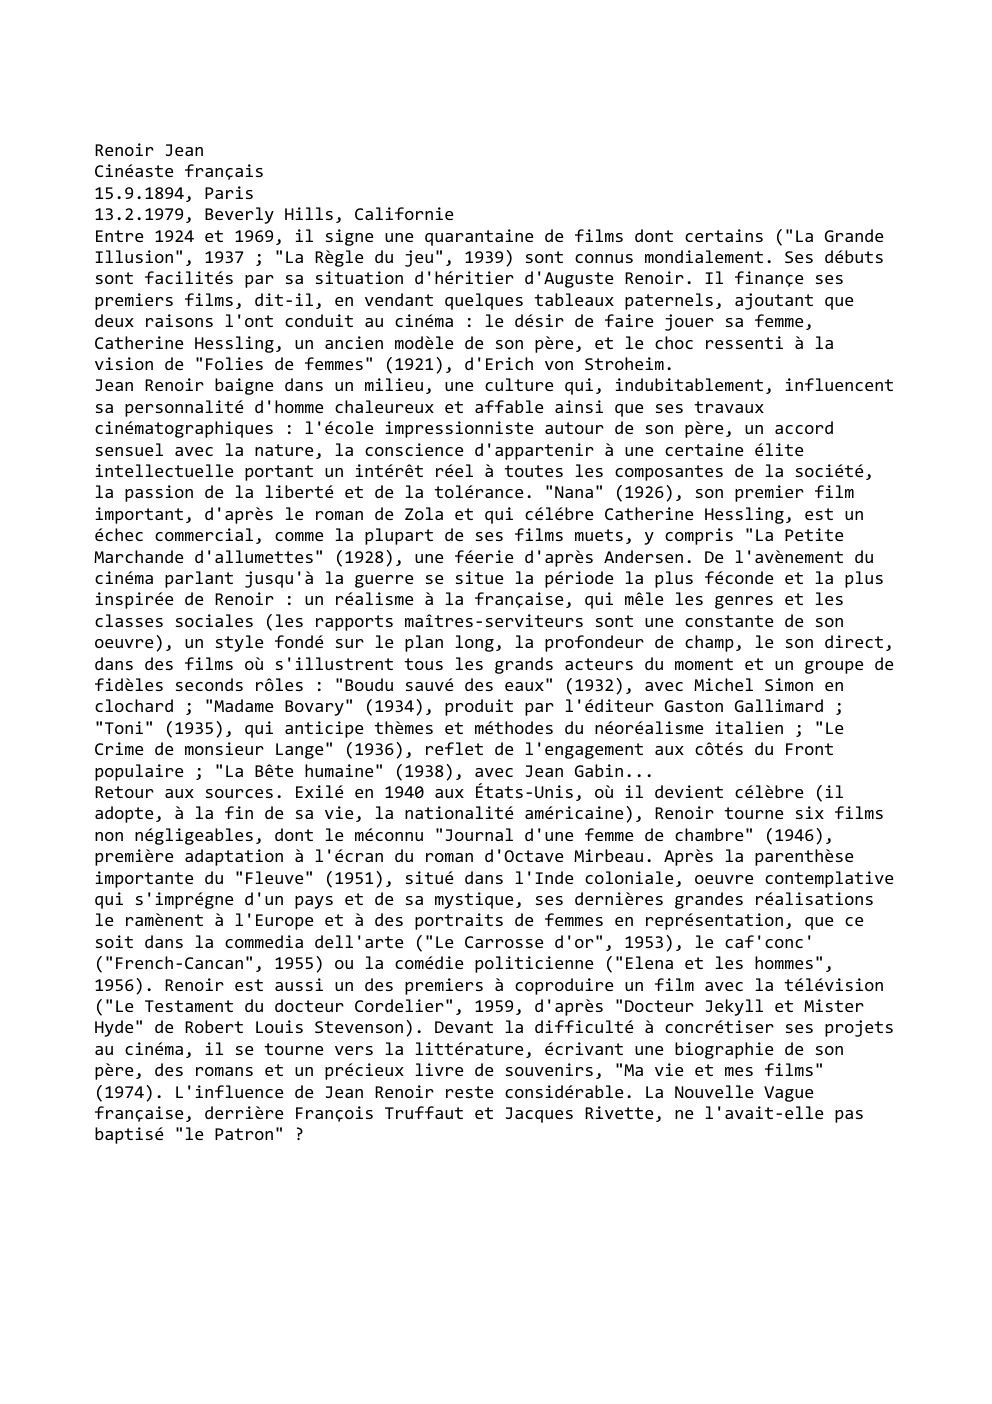 Prévisualisation du document Renoir Jean
Cinéaste français
15.9.1894, Paris
13.2.1979, Beverly Hills, Californie
Entre 1924 et 1969, il signe une quarantaine de films...